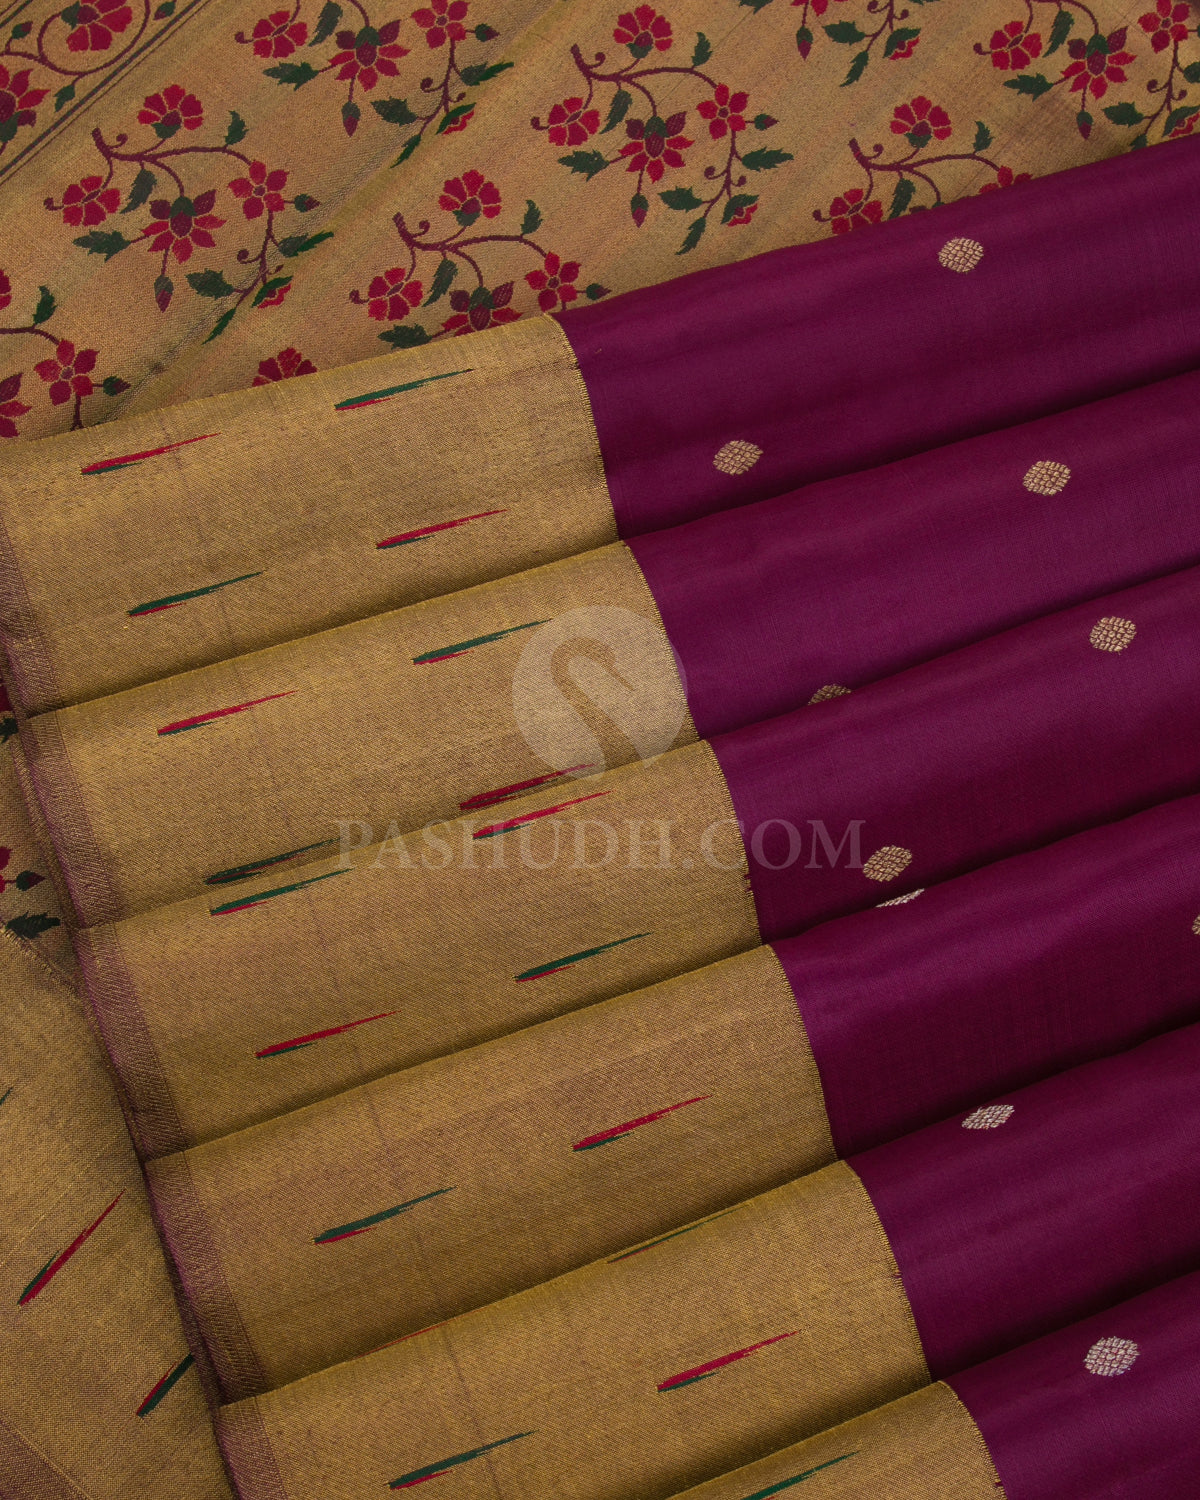 Heather Purple Pure Zari Kanjivaram Silk Saree with Paithani Border - P133(C) - View 4